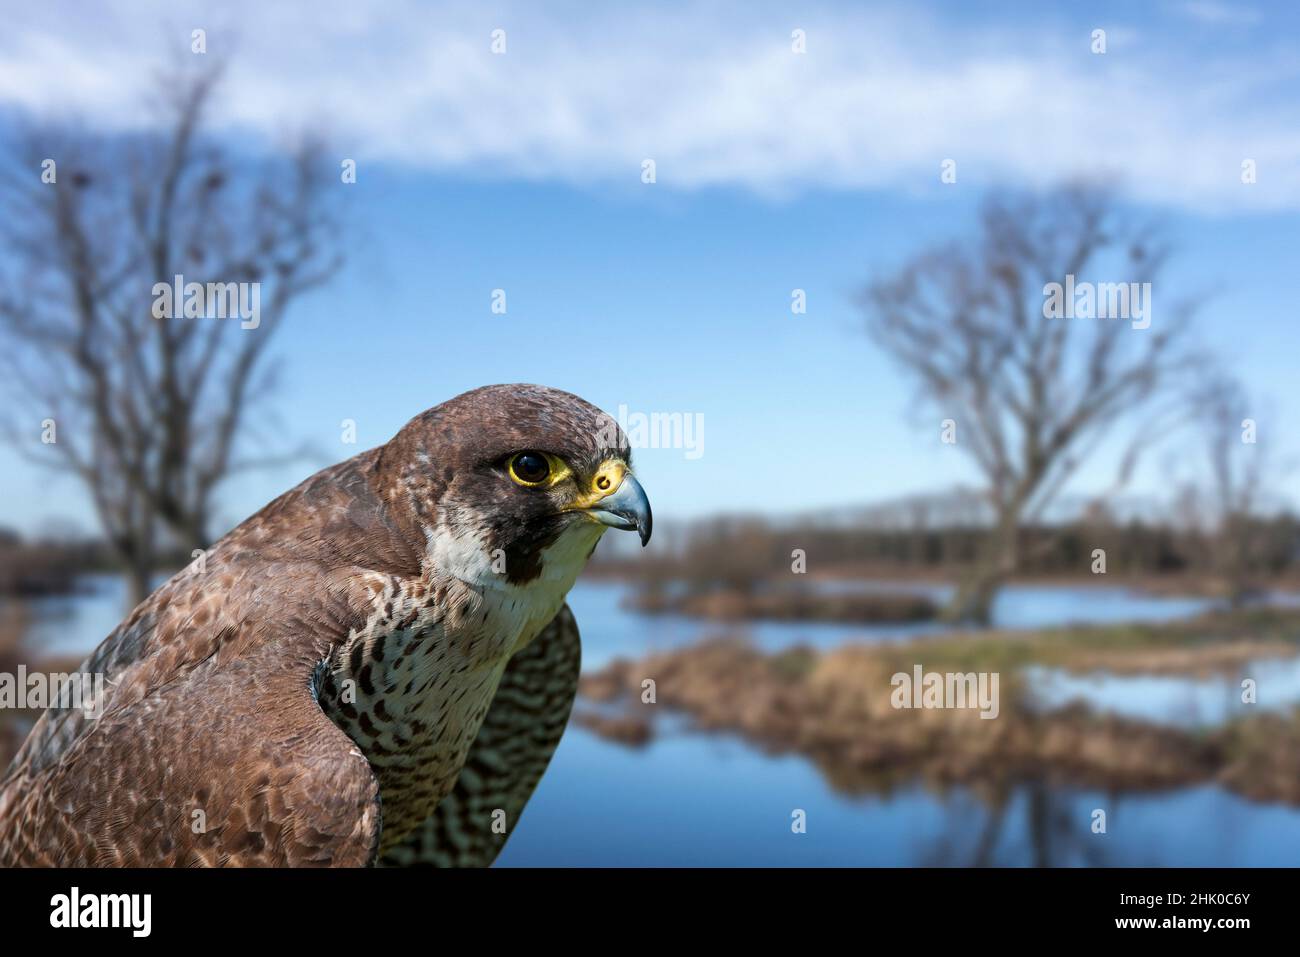 faucon pèlerin (Falco peregrinus) gros plan de la femelle dans les terres humides en hiver.Composite numérique Banque D'Images